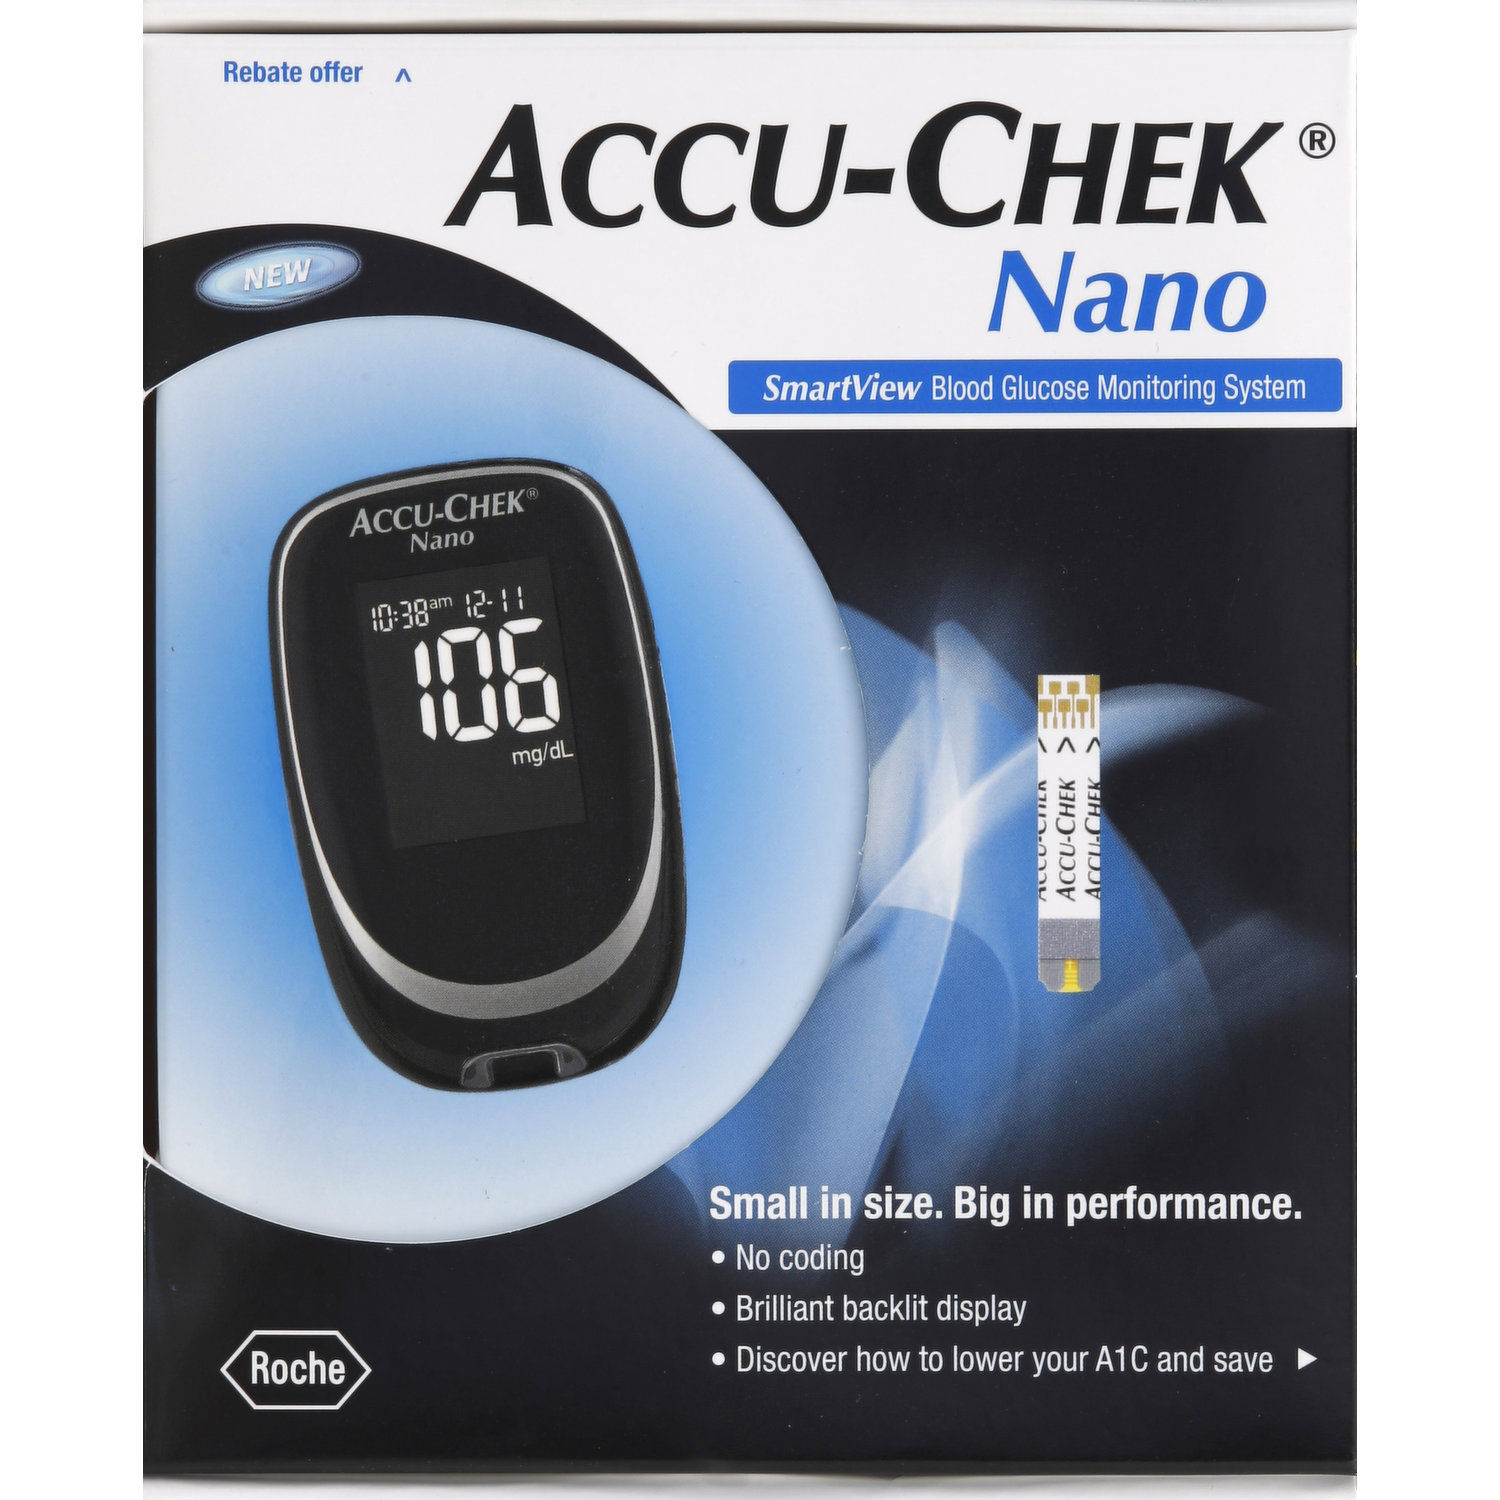 Accu-Chek 360 Diabetes Management System